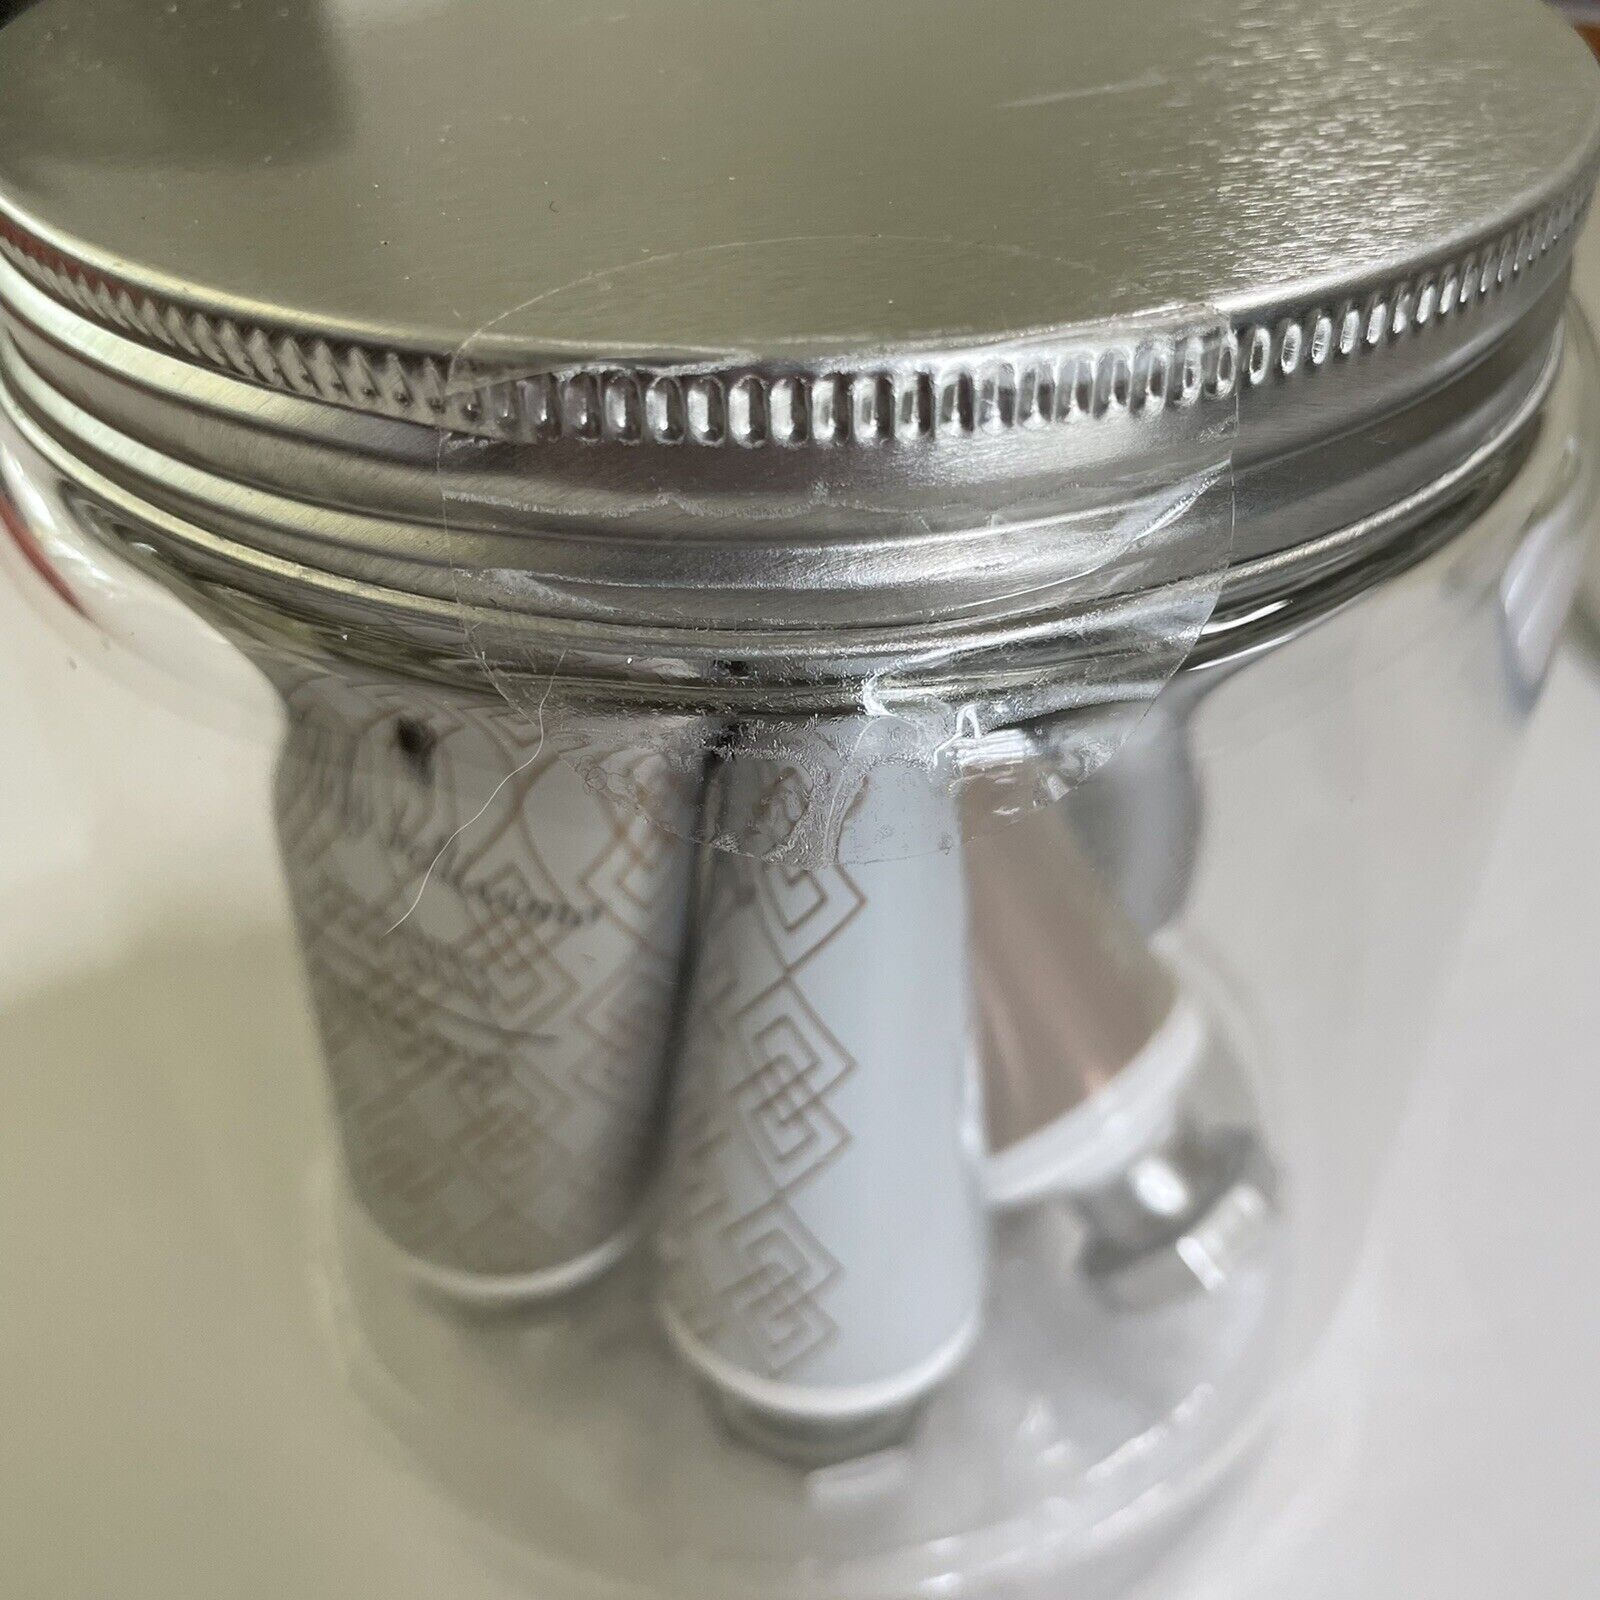 Wendy Bellisimo 6 piece Hand Cream set in a reusable mason jar